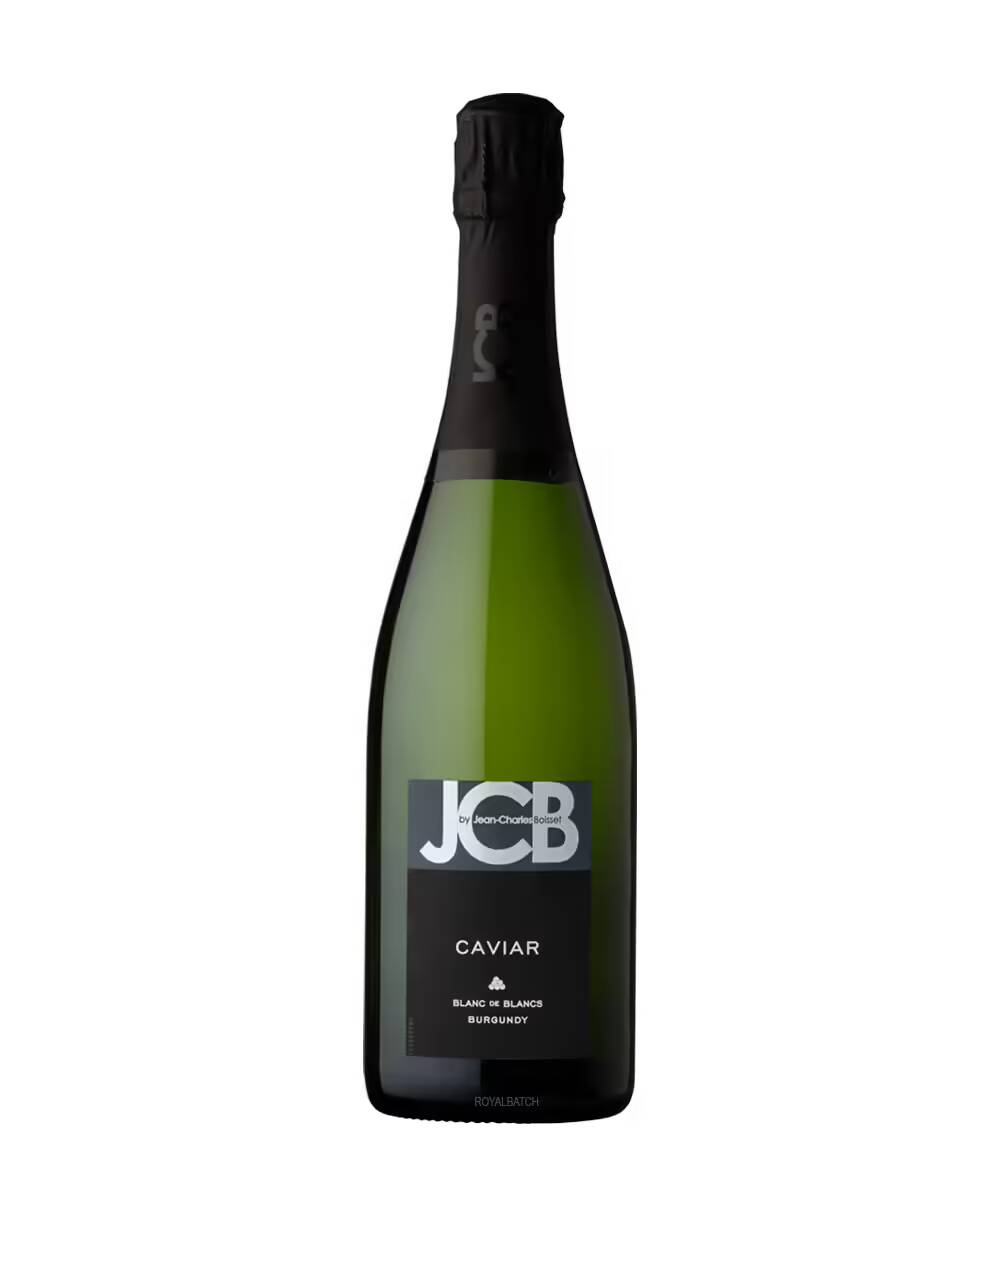 JCB Cremant de Bourgogne Caviar Sparkling Wine